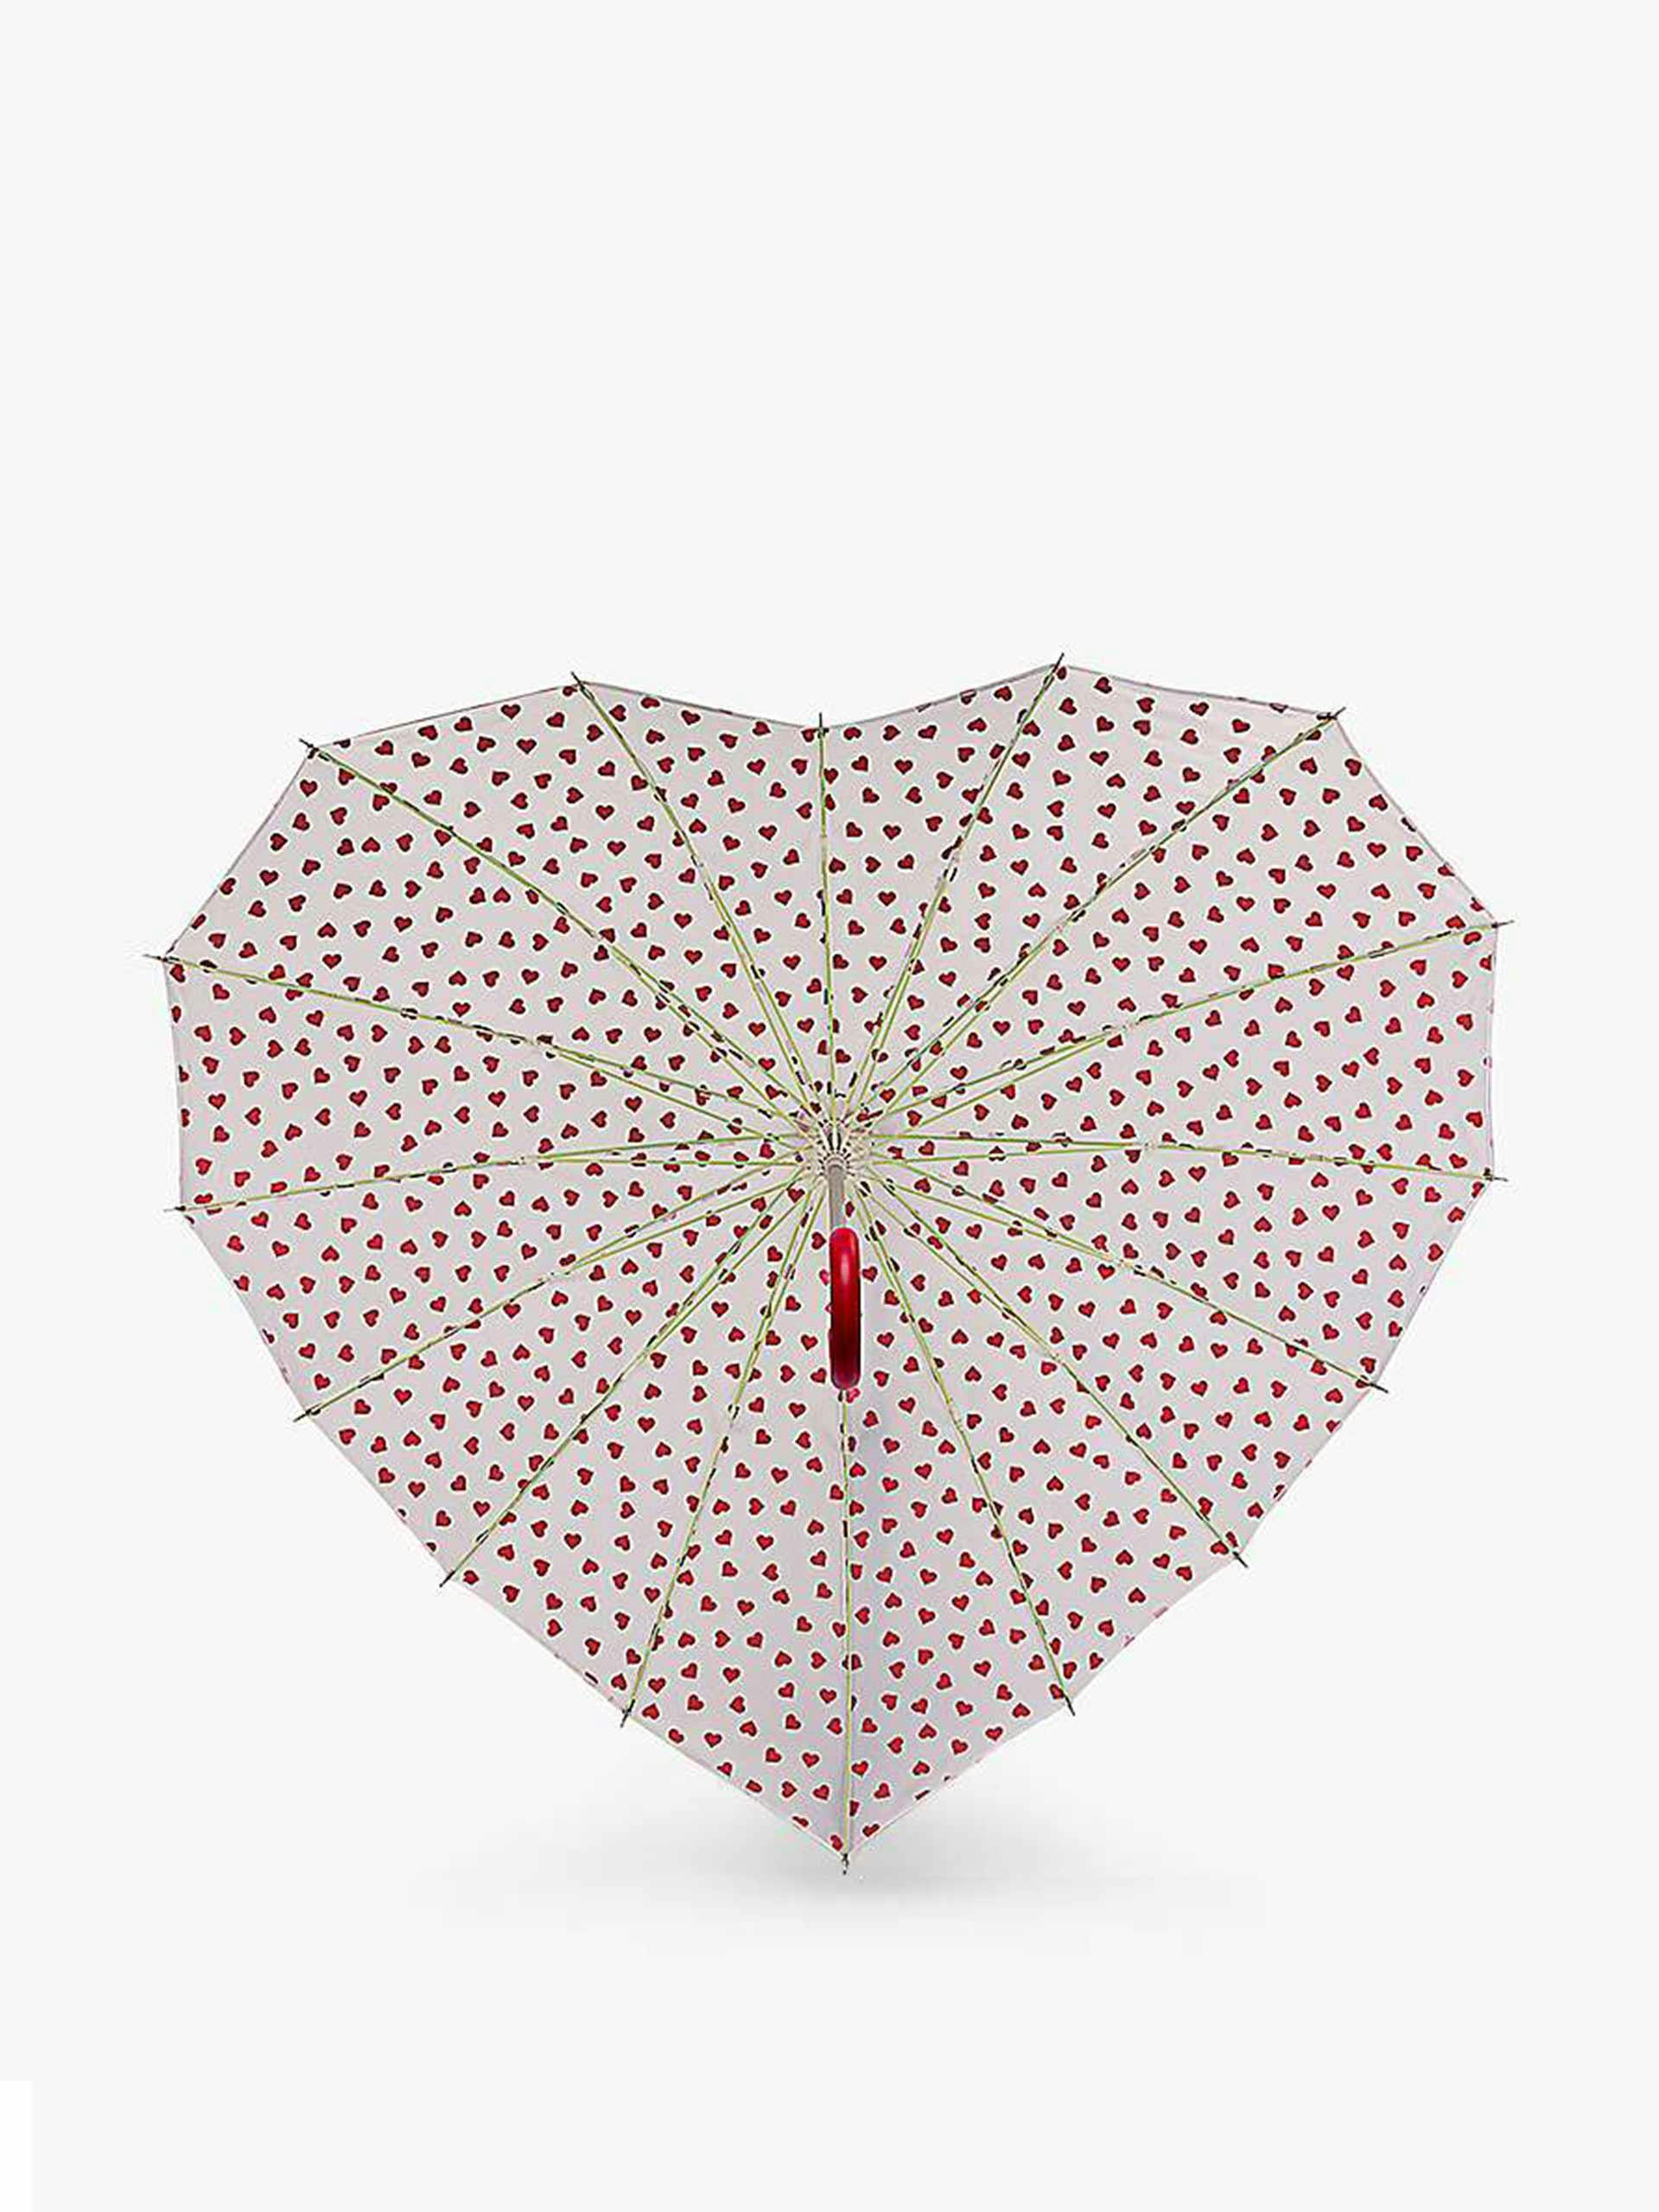 Heart shaped umbrella